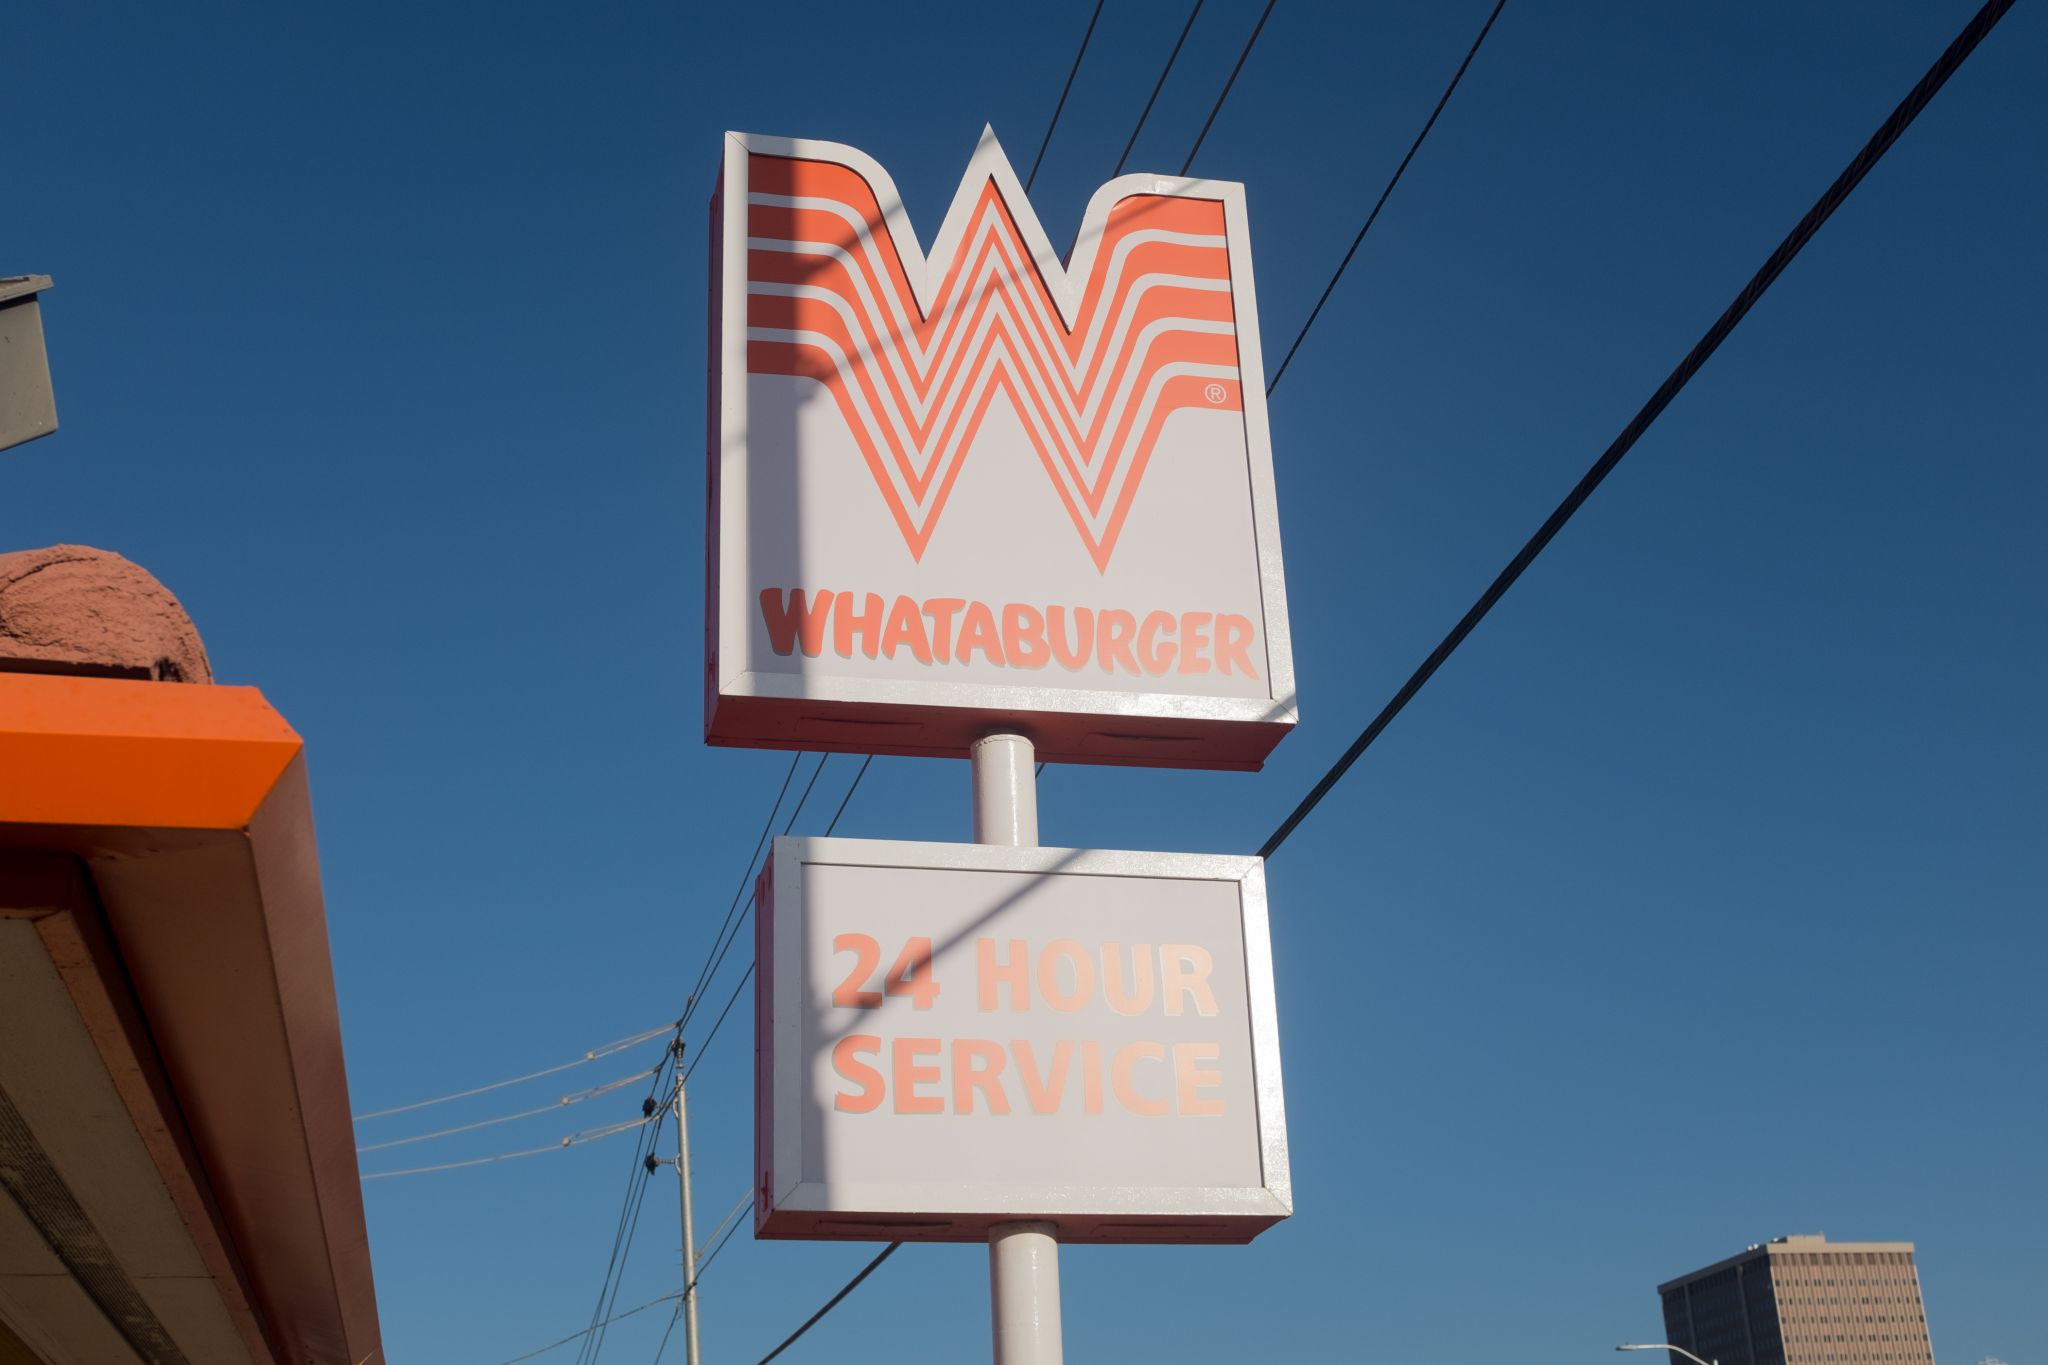 Whataburger in Dayton now open